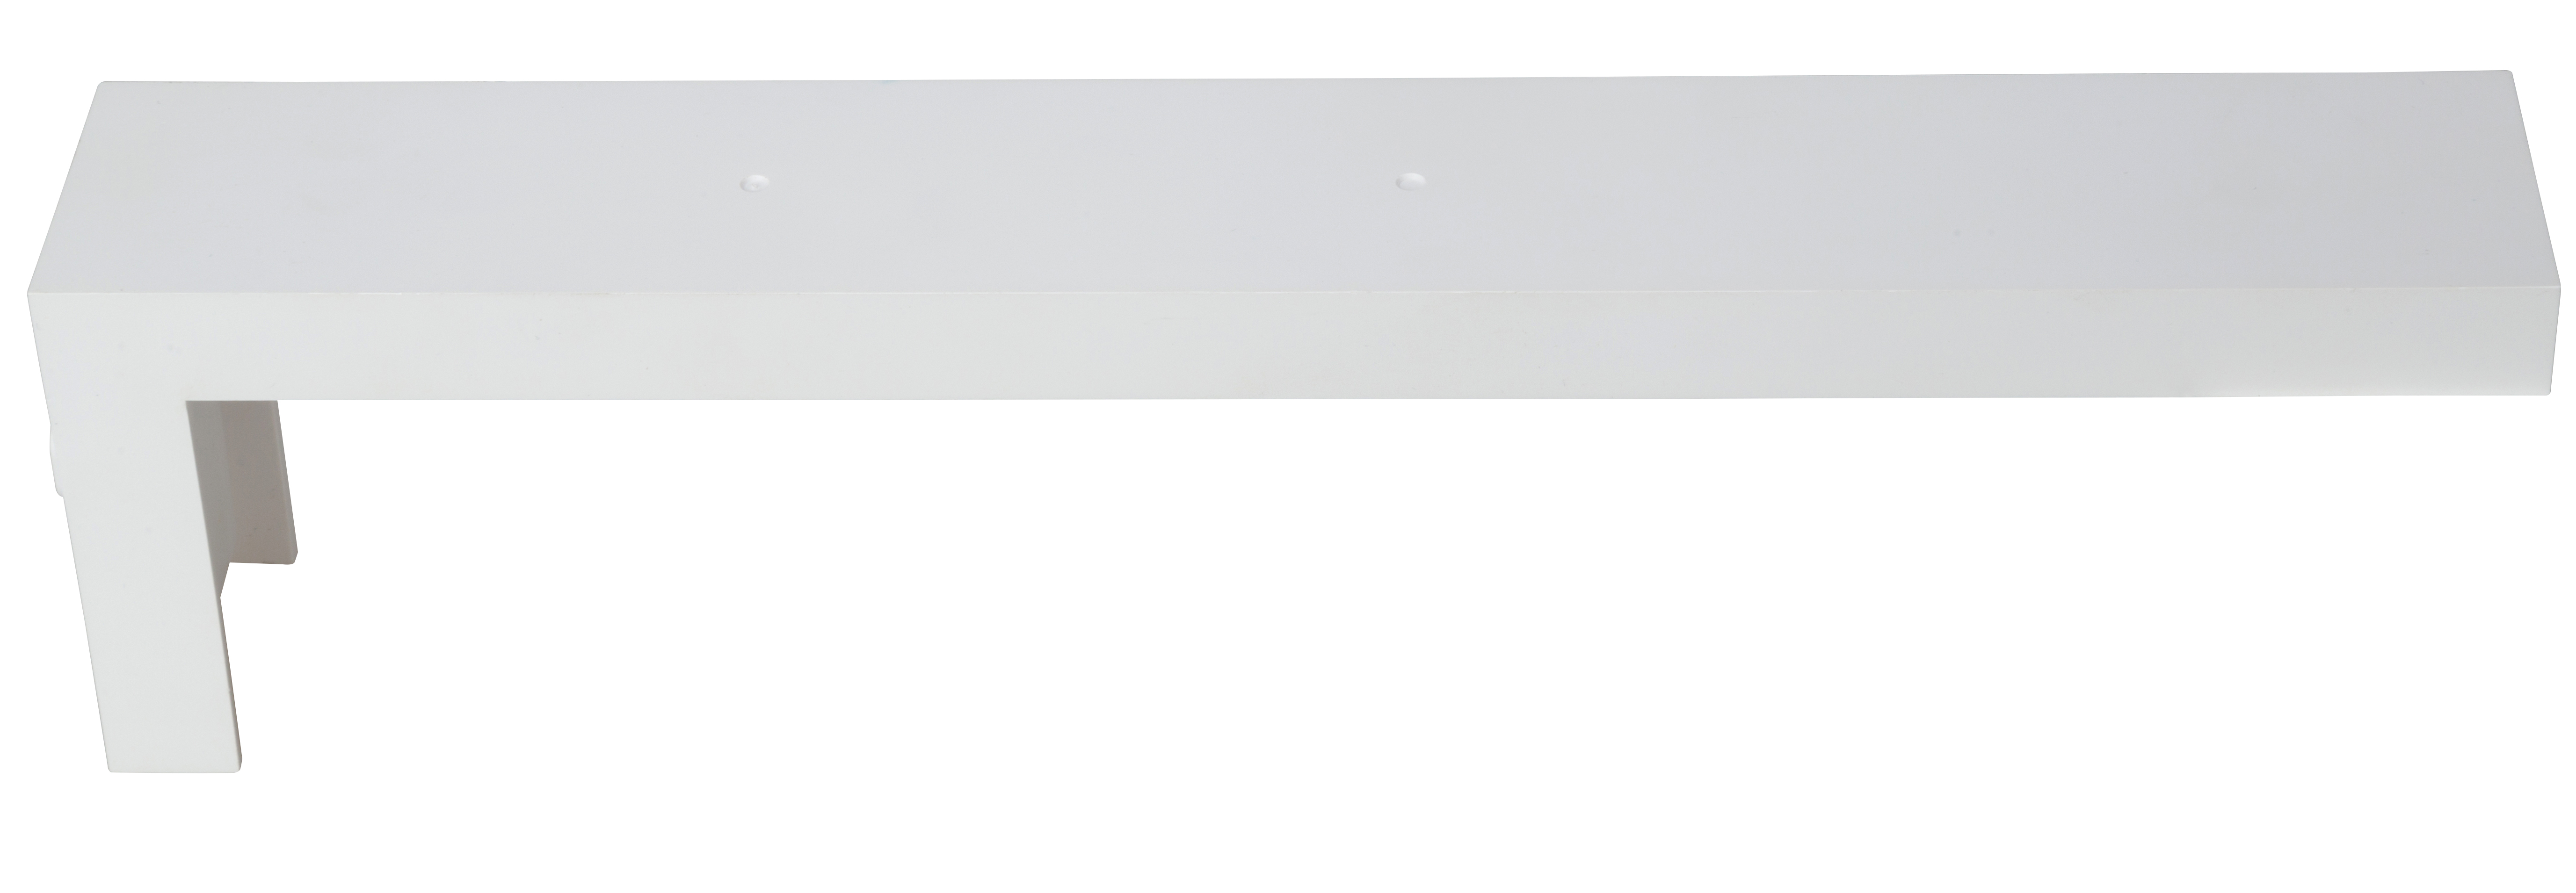 Wall bracket white f. emergency luminaires Design K1, K2, K3